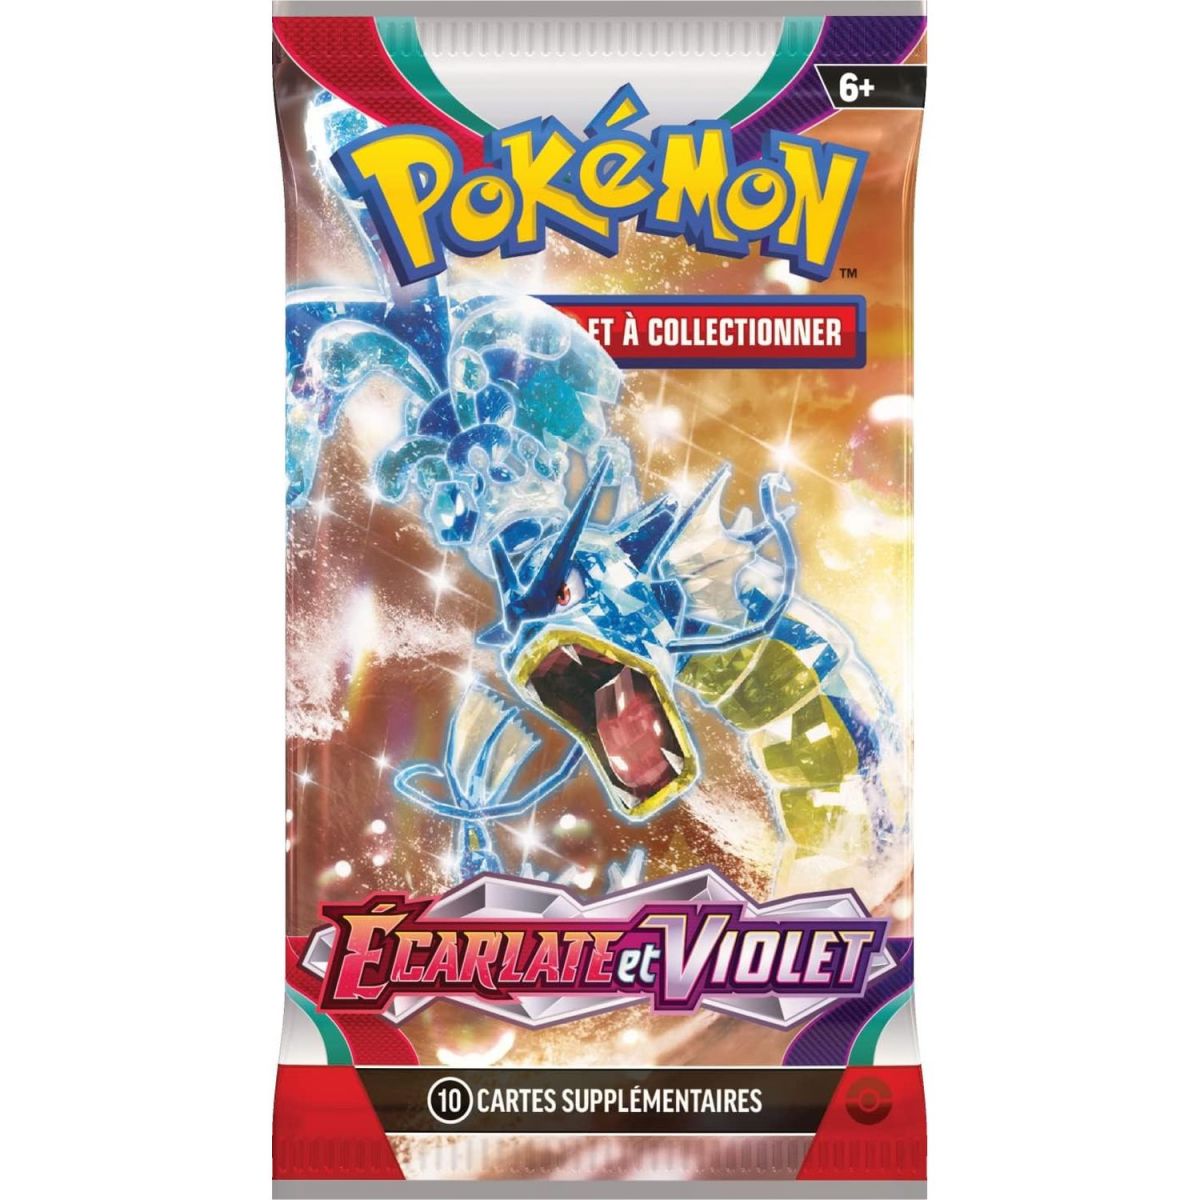 Pokémon - Booster  - Ecarlate et Violet [EV01] [SV1] - FR